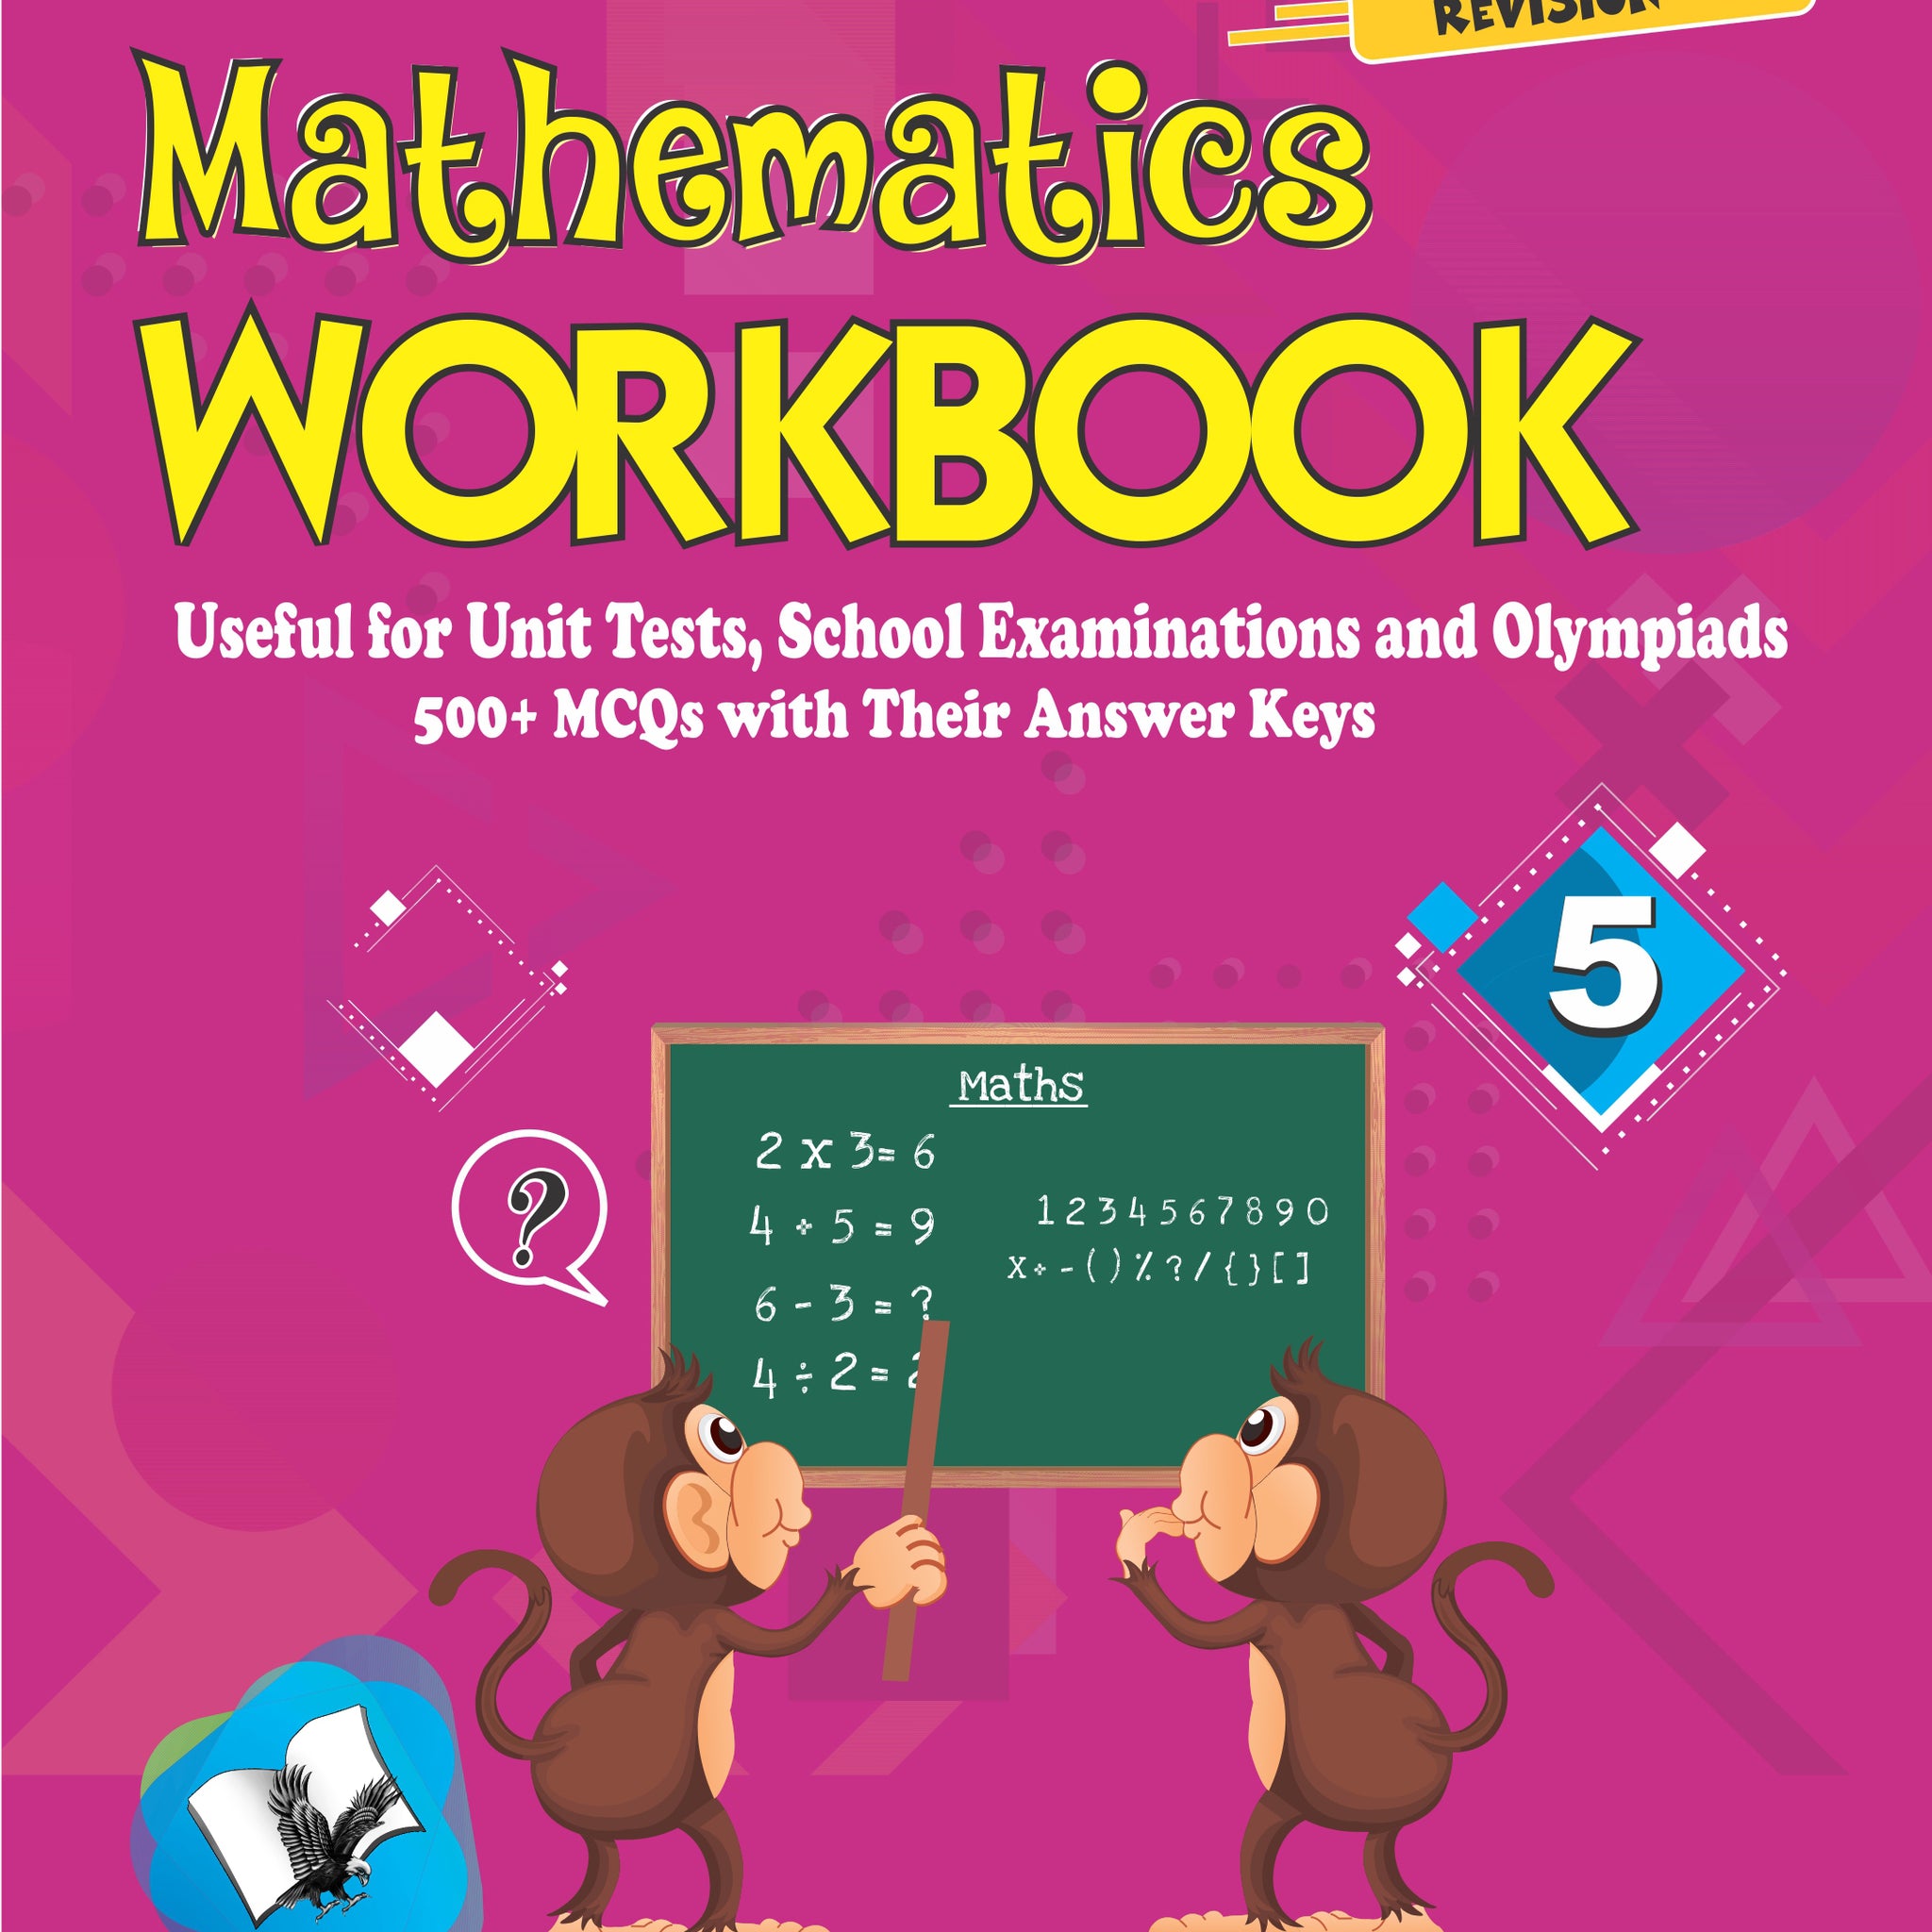 Mathematics Workbook Class 5